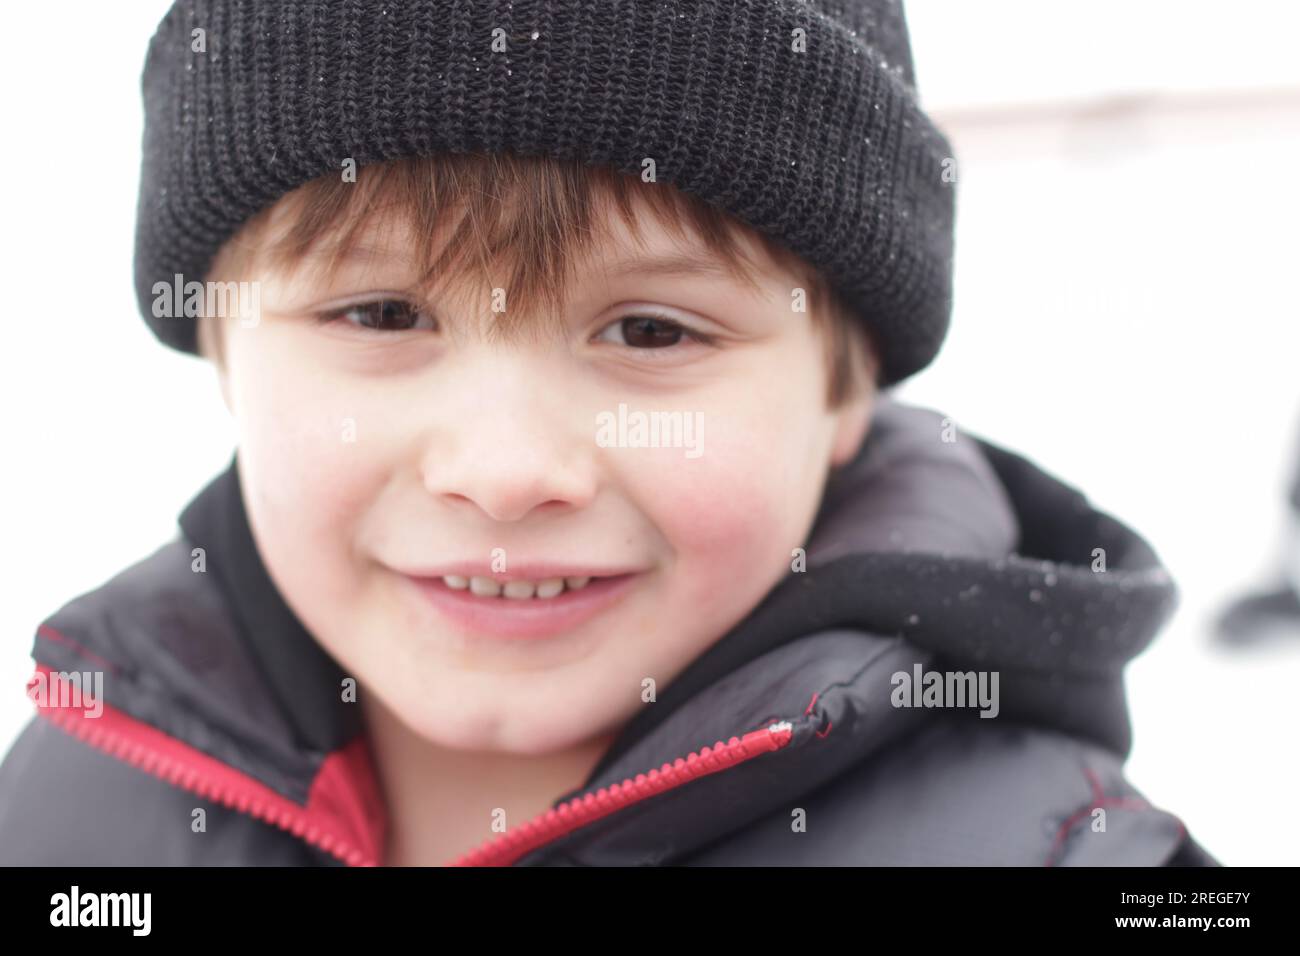 il bambino gioca nella neve con un berretto che mette in mostra il suo viso dolce Foto Stock